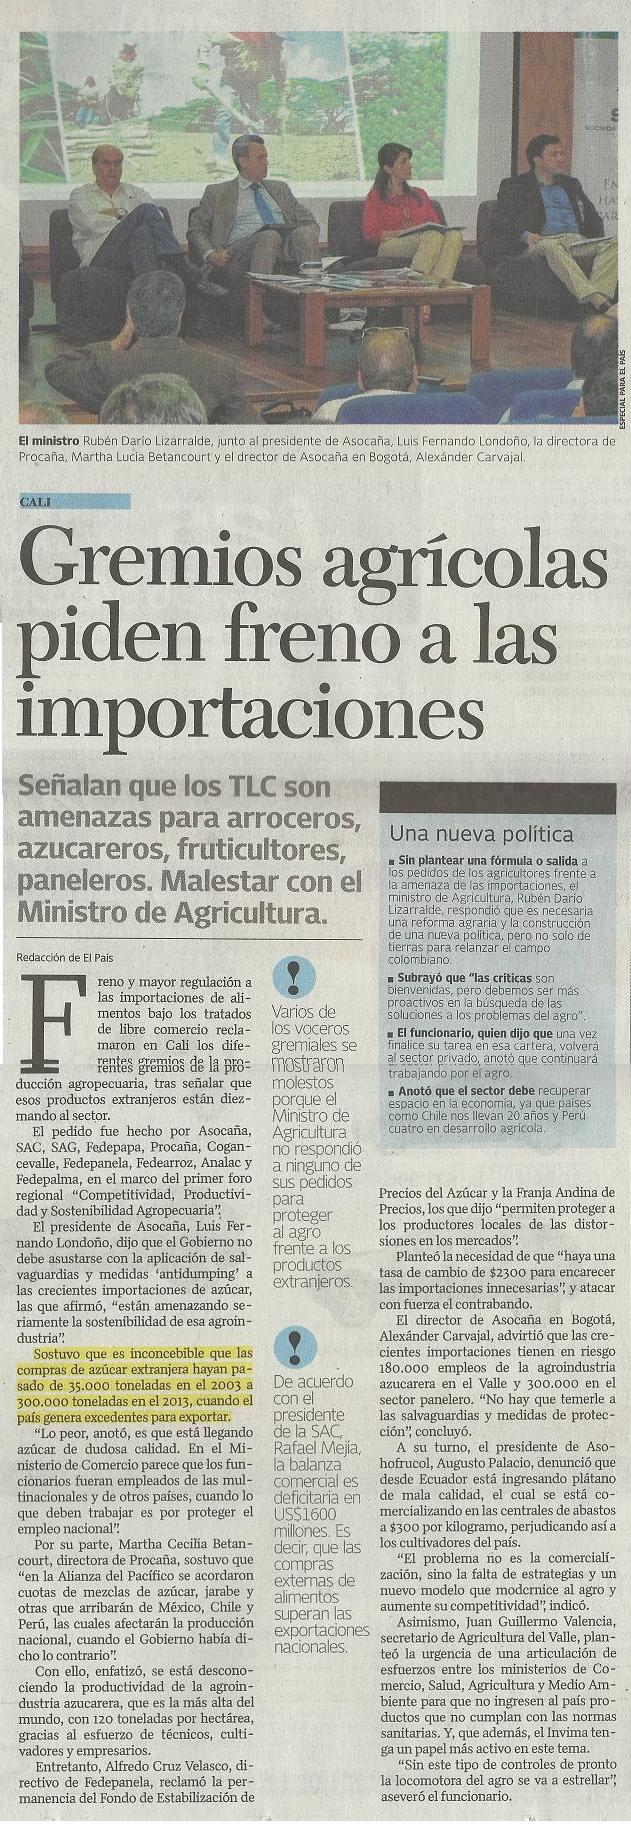 Gremios agrícolas piden al Gobierno freno a las importaciones. Diario El País. Febrero 15 de 2014.